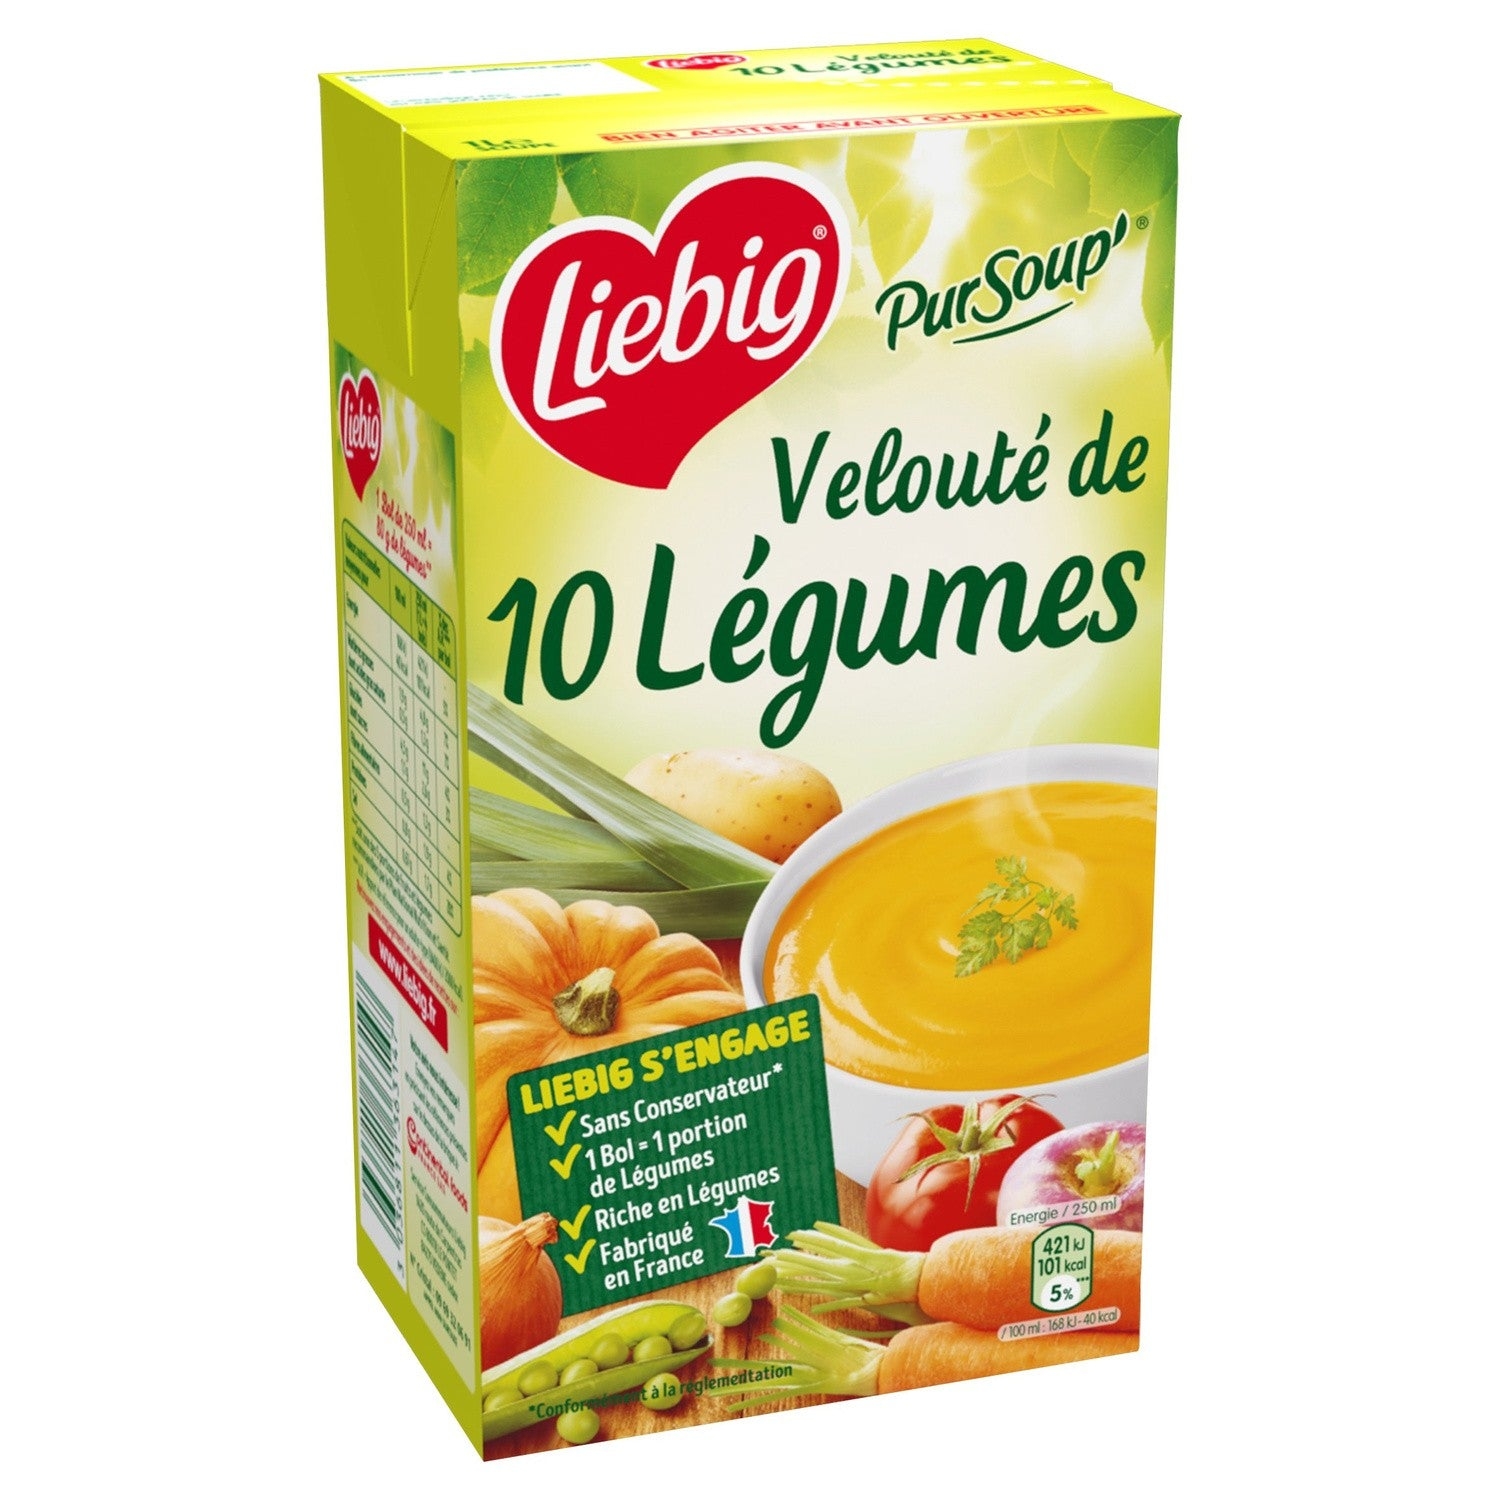 10 legumes soupPursoup velouté 10 légumes brick – Pursoup 10 vegetables carton – Liébig, 2x30cl – Chanteroy – Le Vacherin Deli